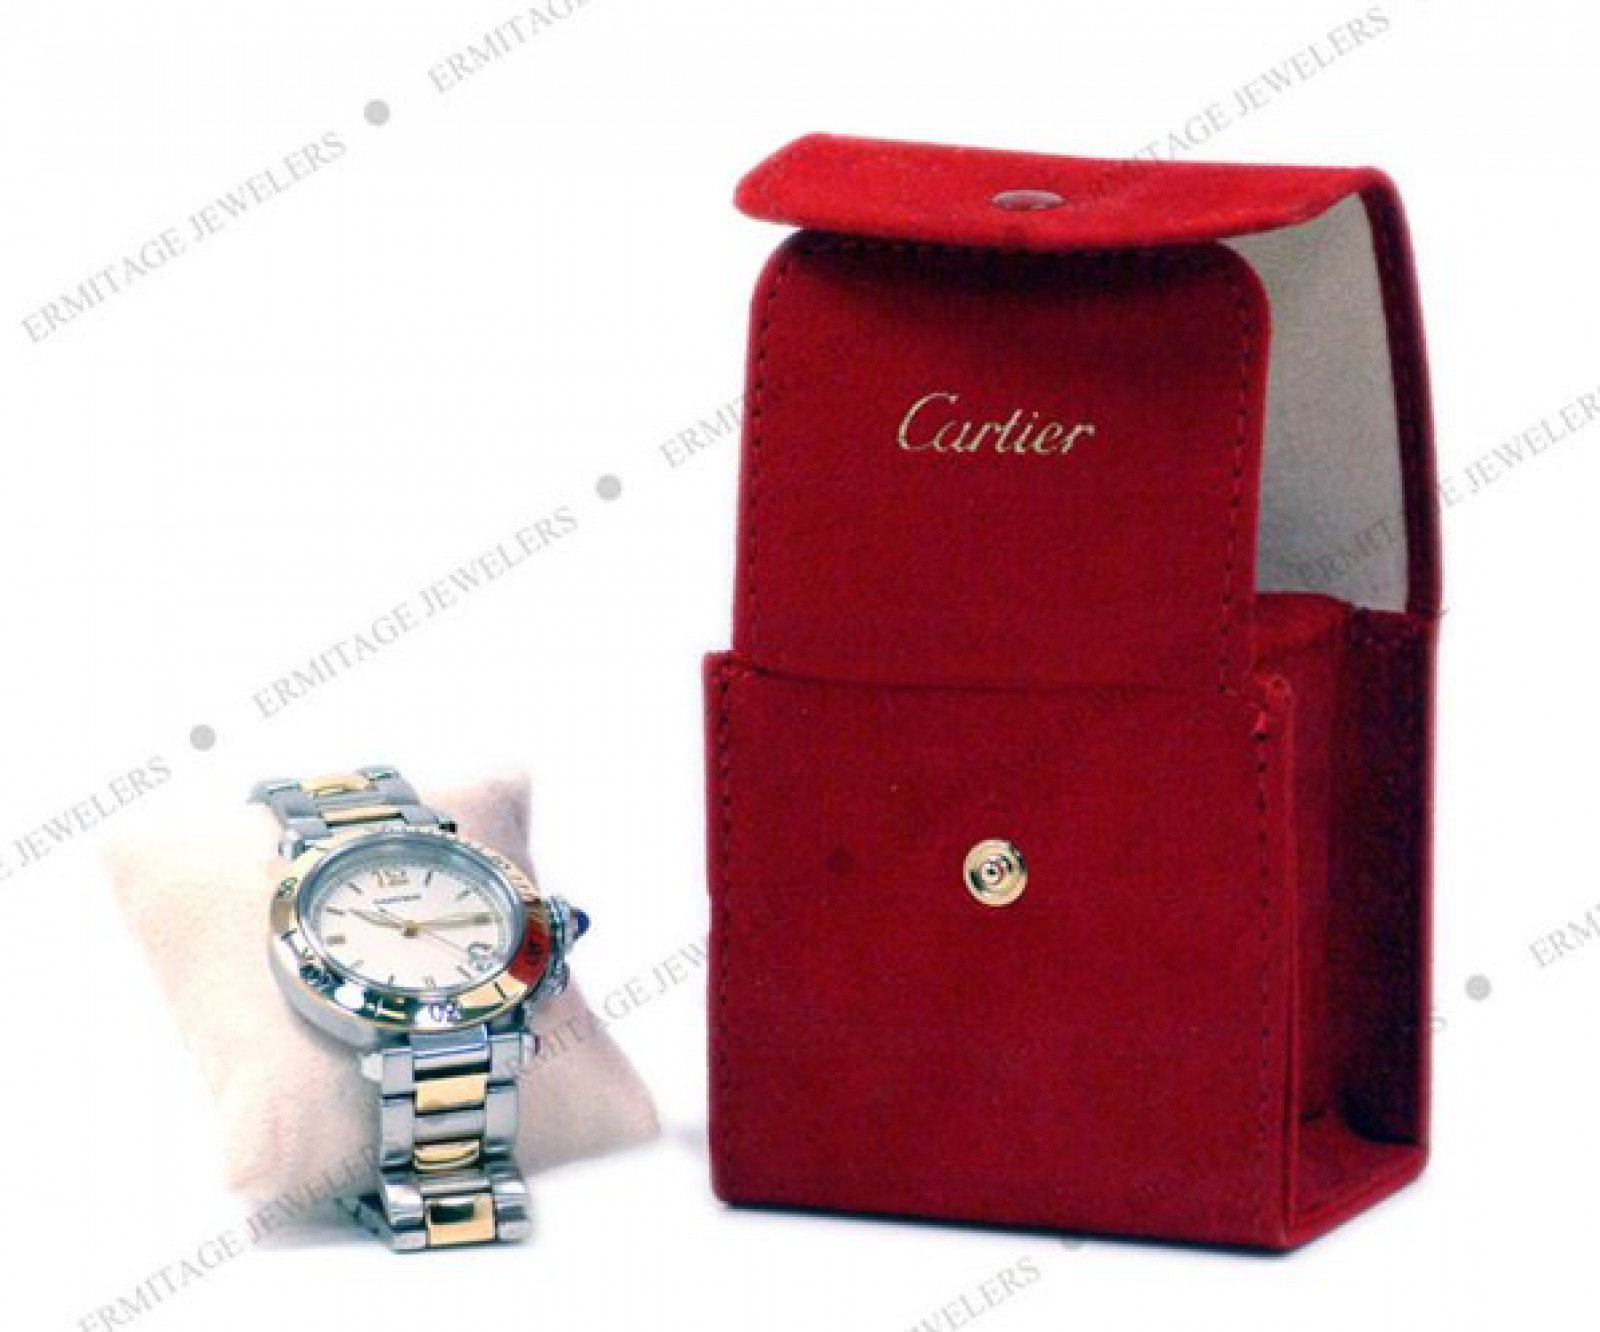 Cartier Pasha 1034 Gold & Steel